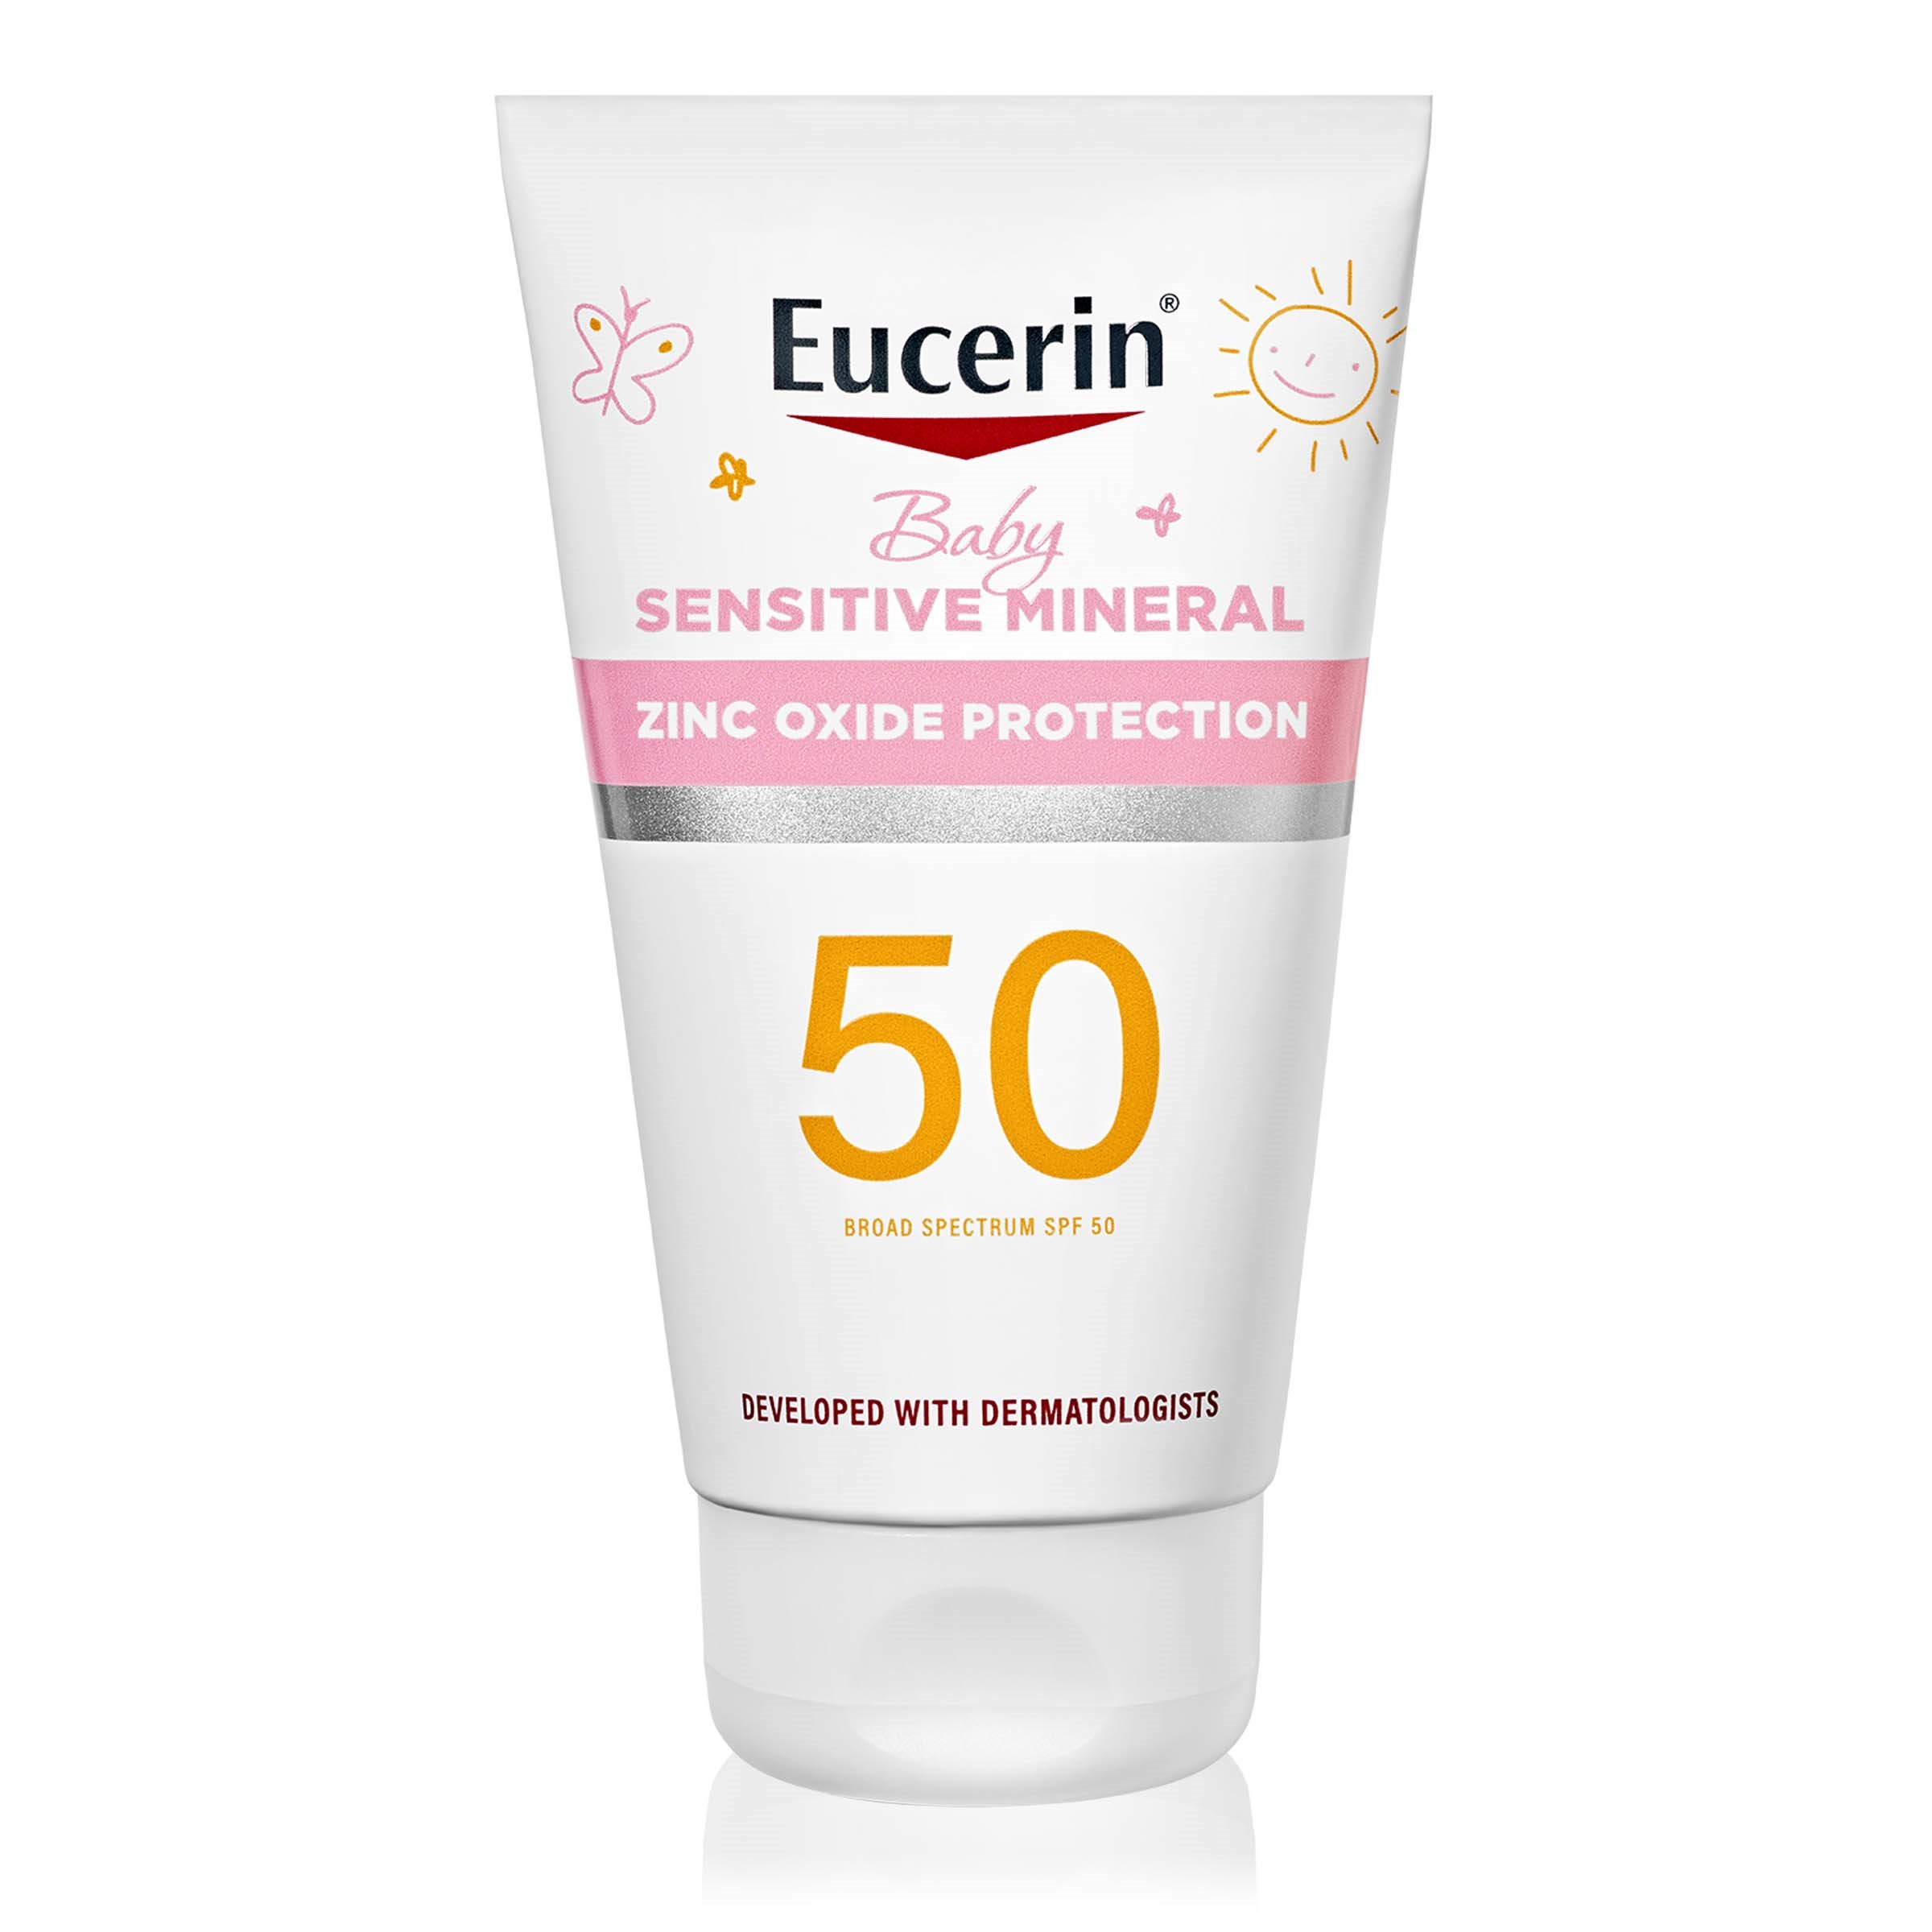 Eucerin Sun Sensitive Mineral Baby Sunscreen SPF 50, 4 Fl Oz Tube